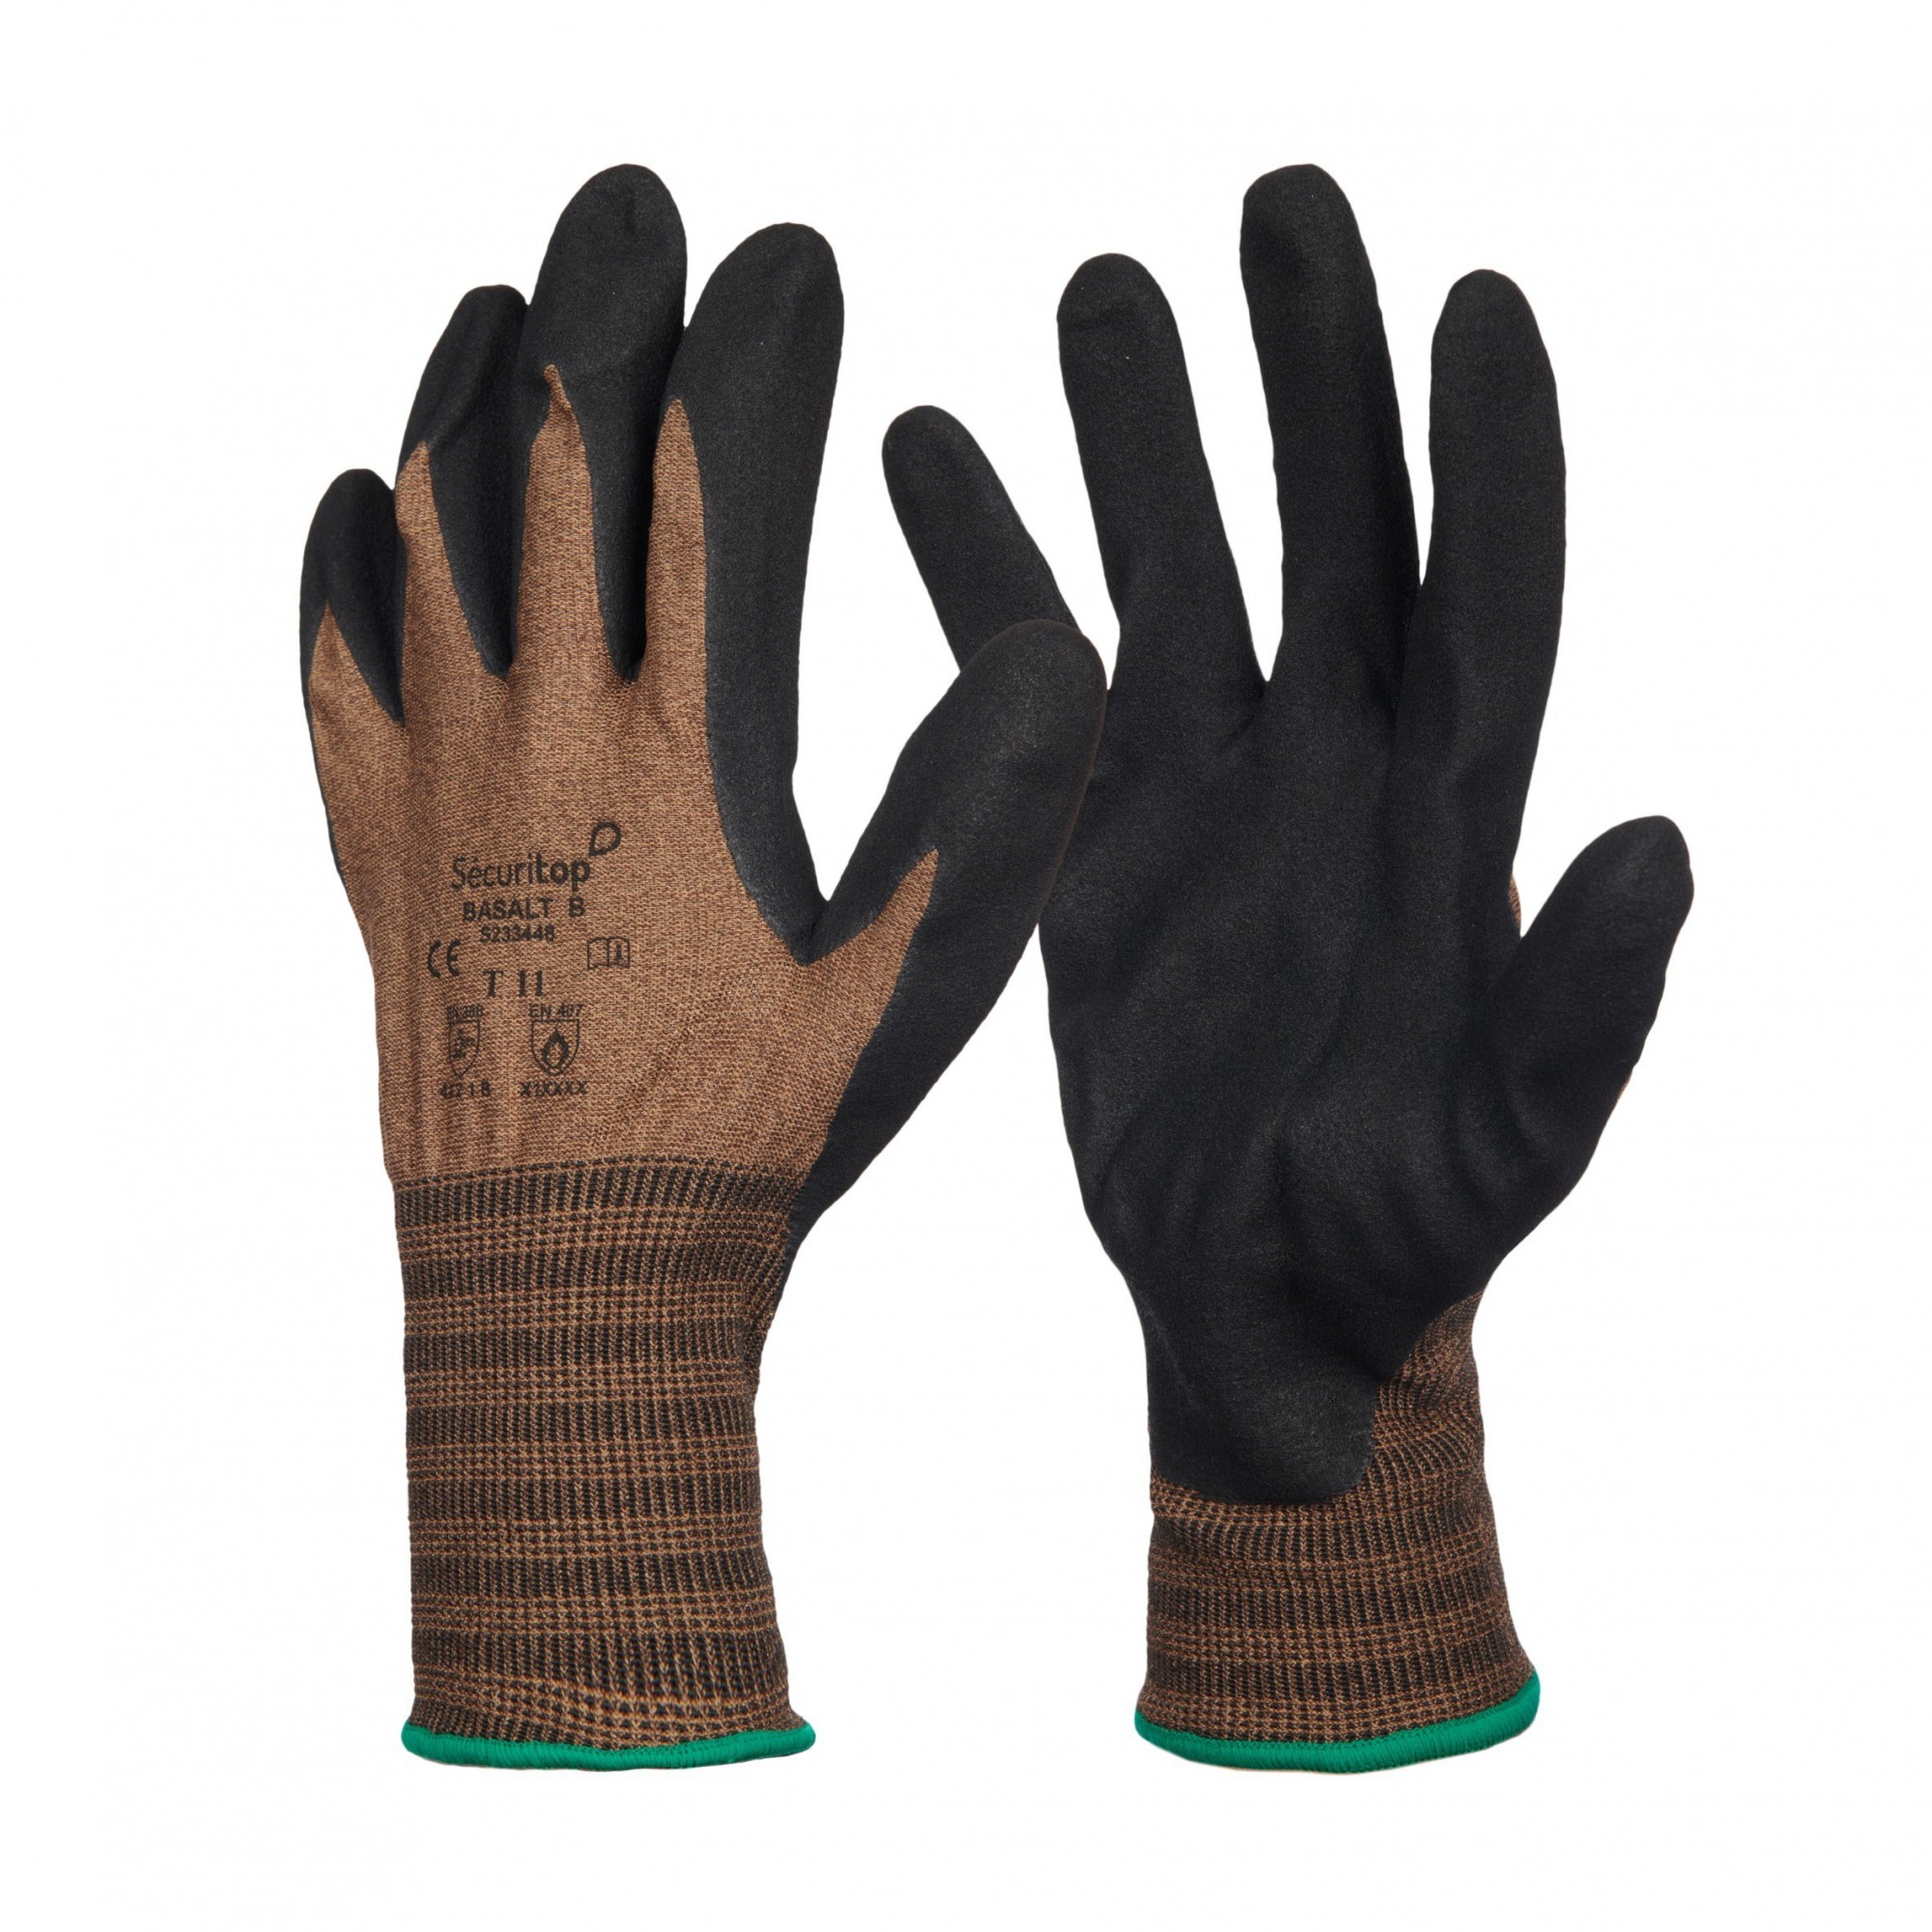 12 Paires de gants de manutention Basalt B - Sécuritop - SECURITOP